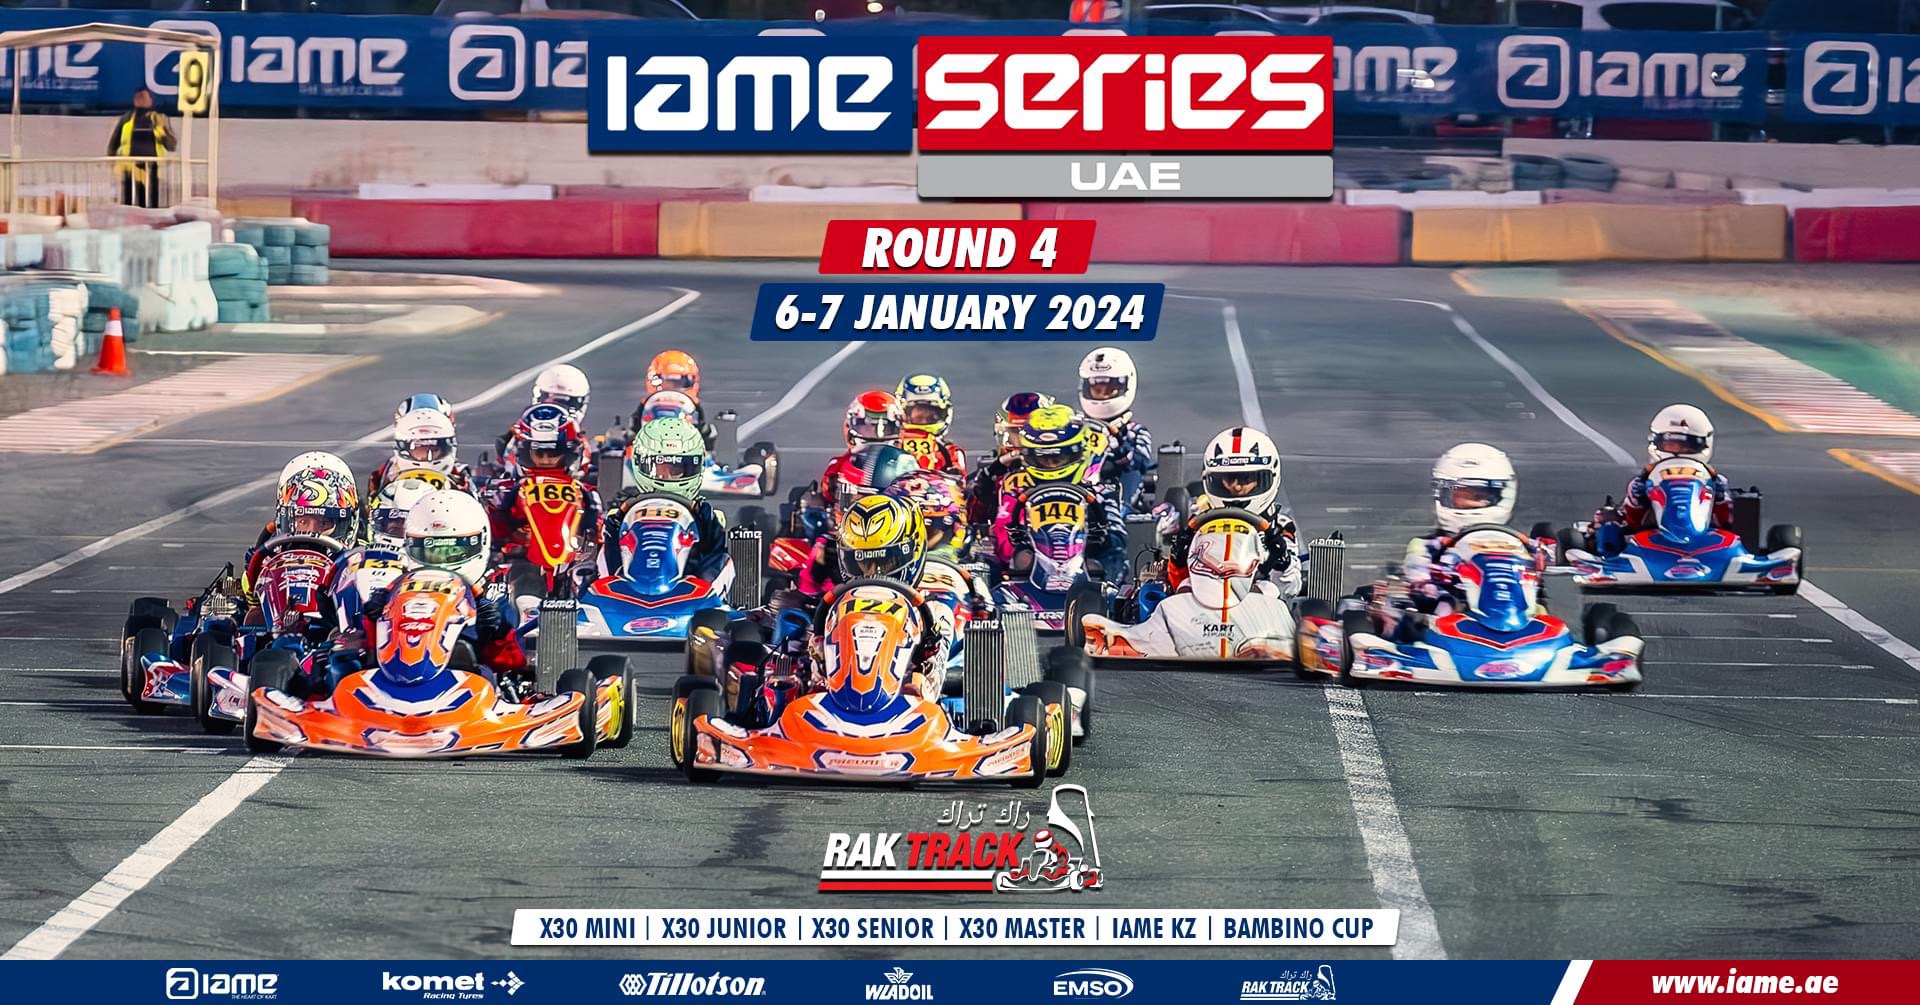 Thrills on the Track: IAME Series UAE Round 4 at RAK Track